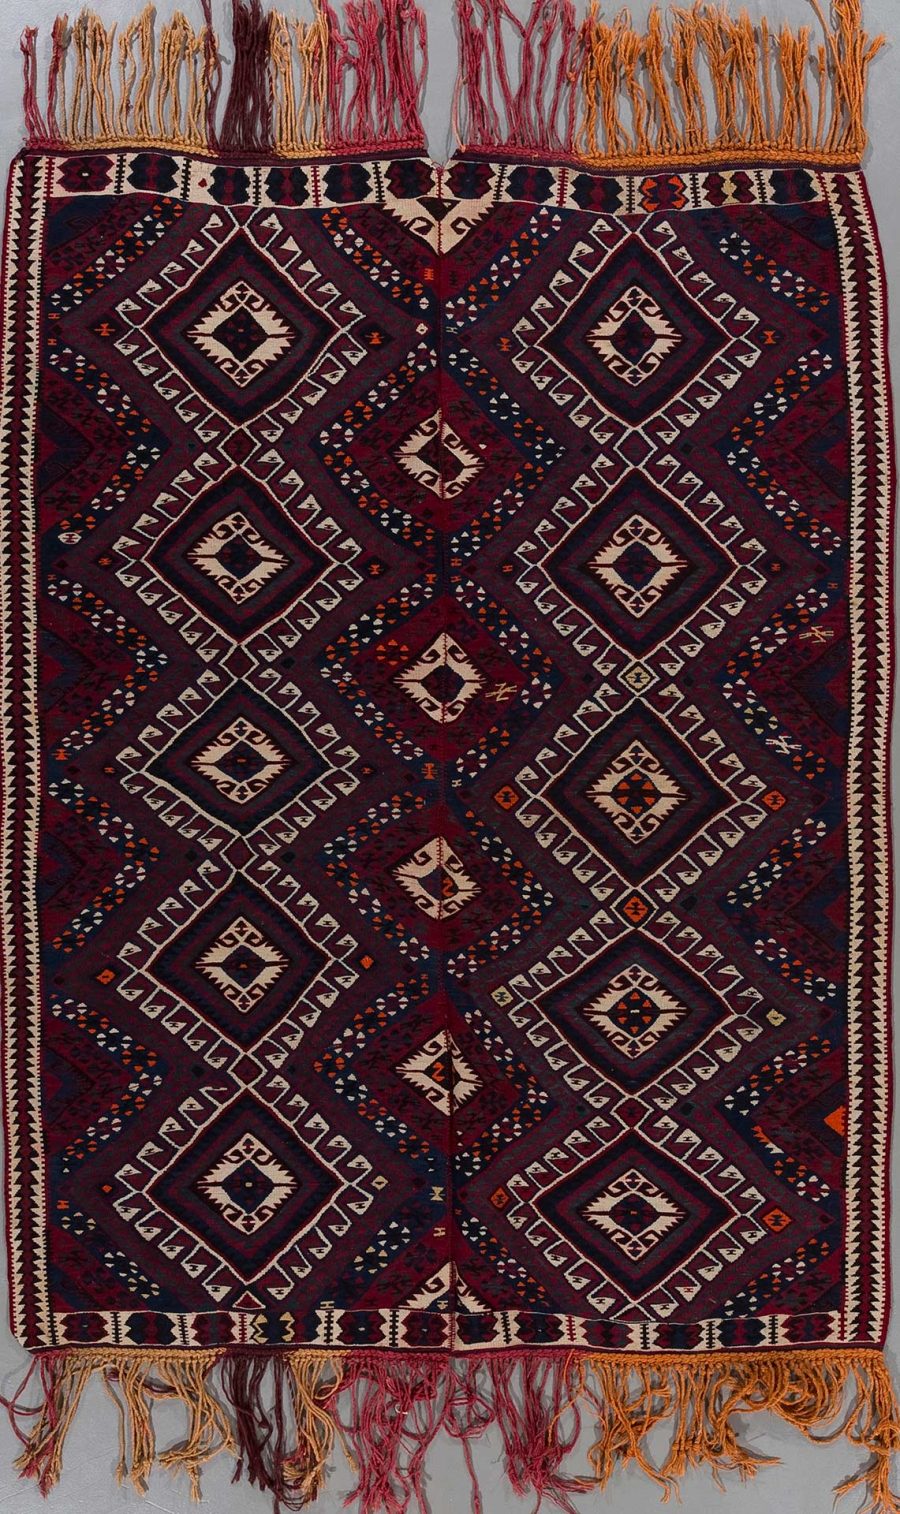 Traditioneller handgewebter Teppich mit komplexem Muster in Dunkelrot, Schwarz und Beige, dekoriert mit geometrischen Figuren und Fransen an den Enden.